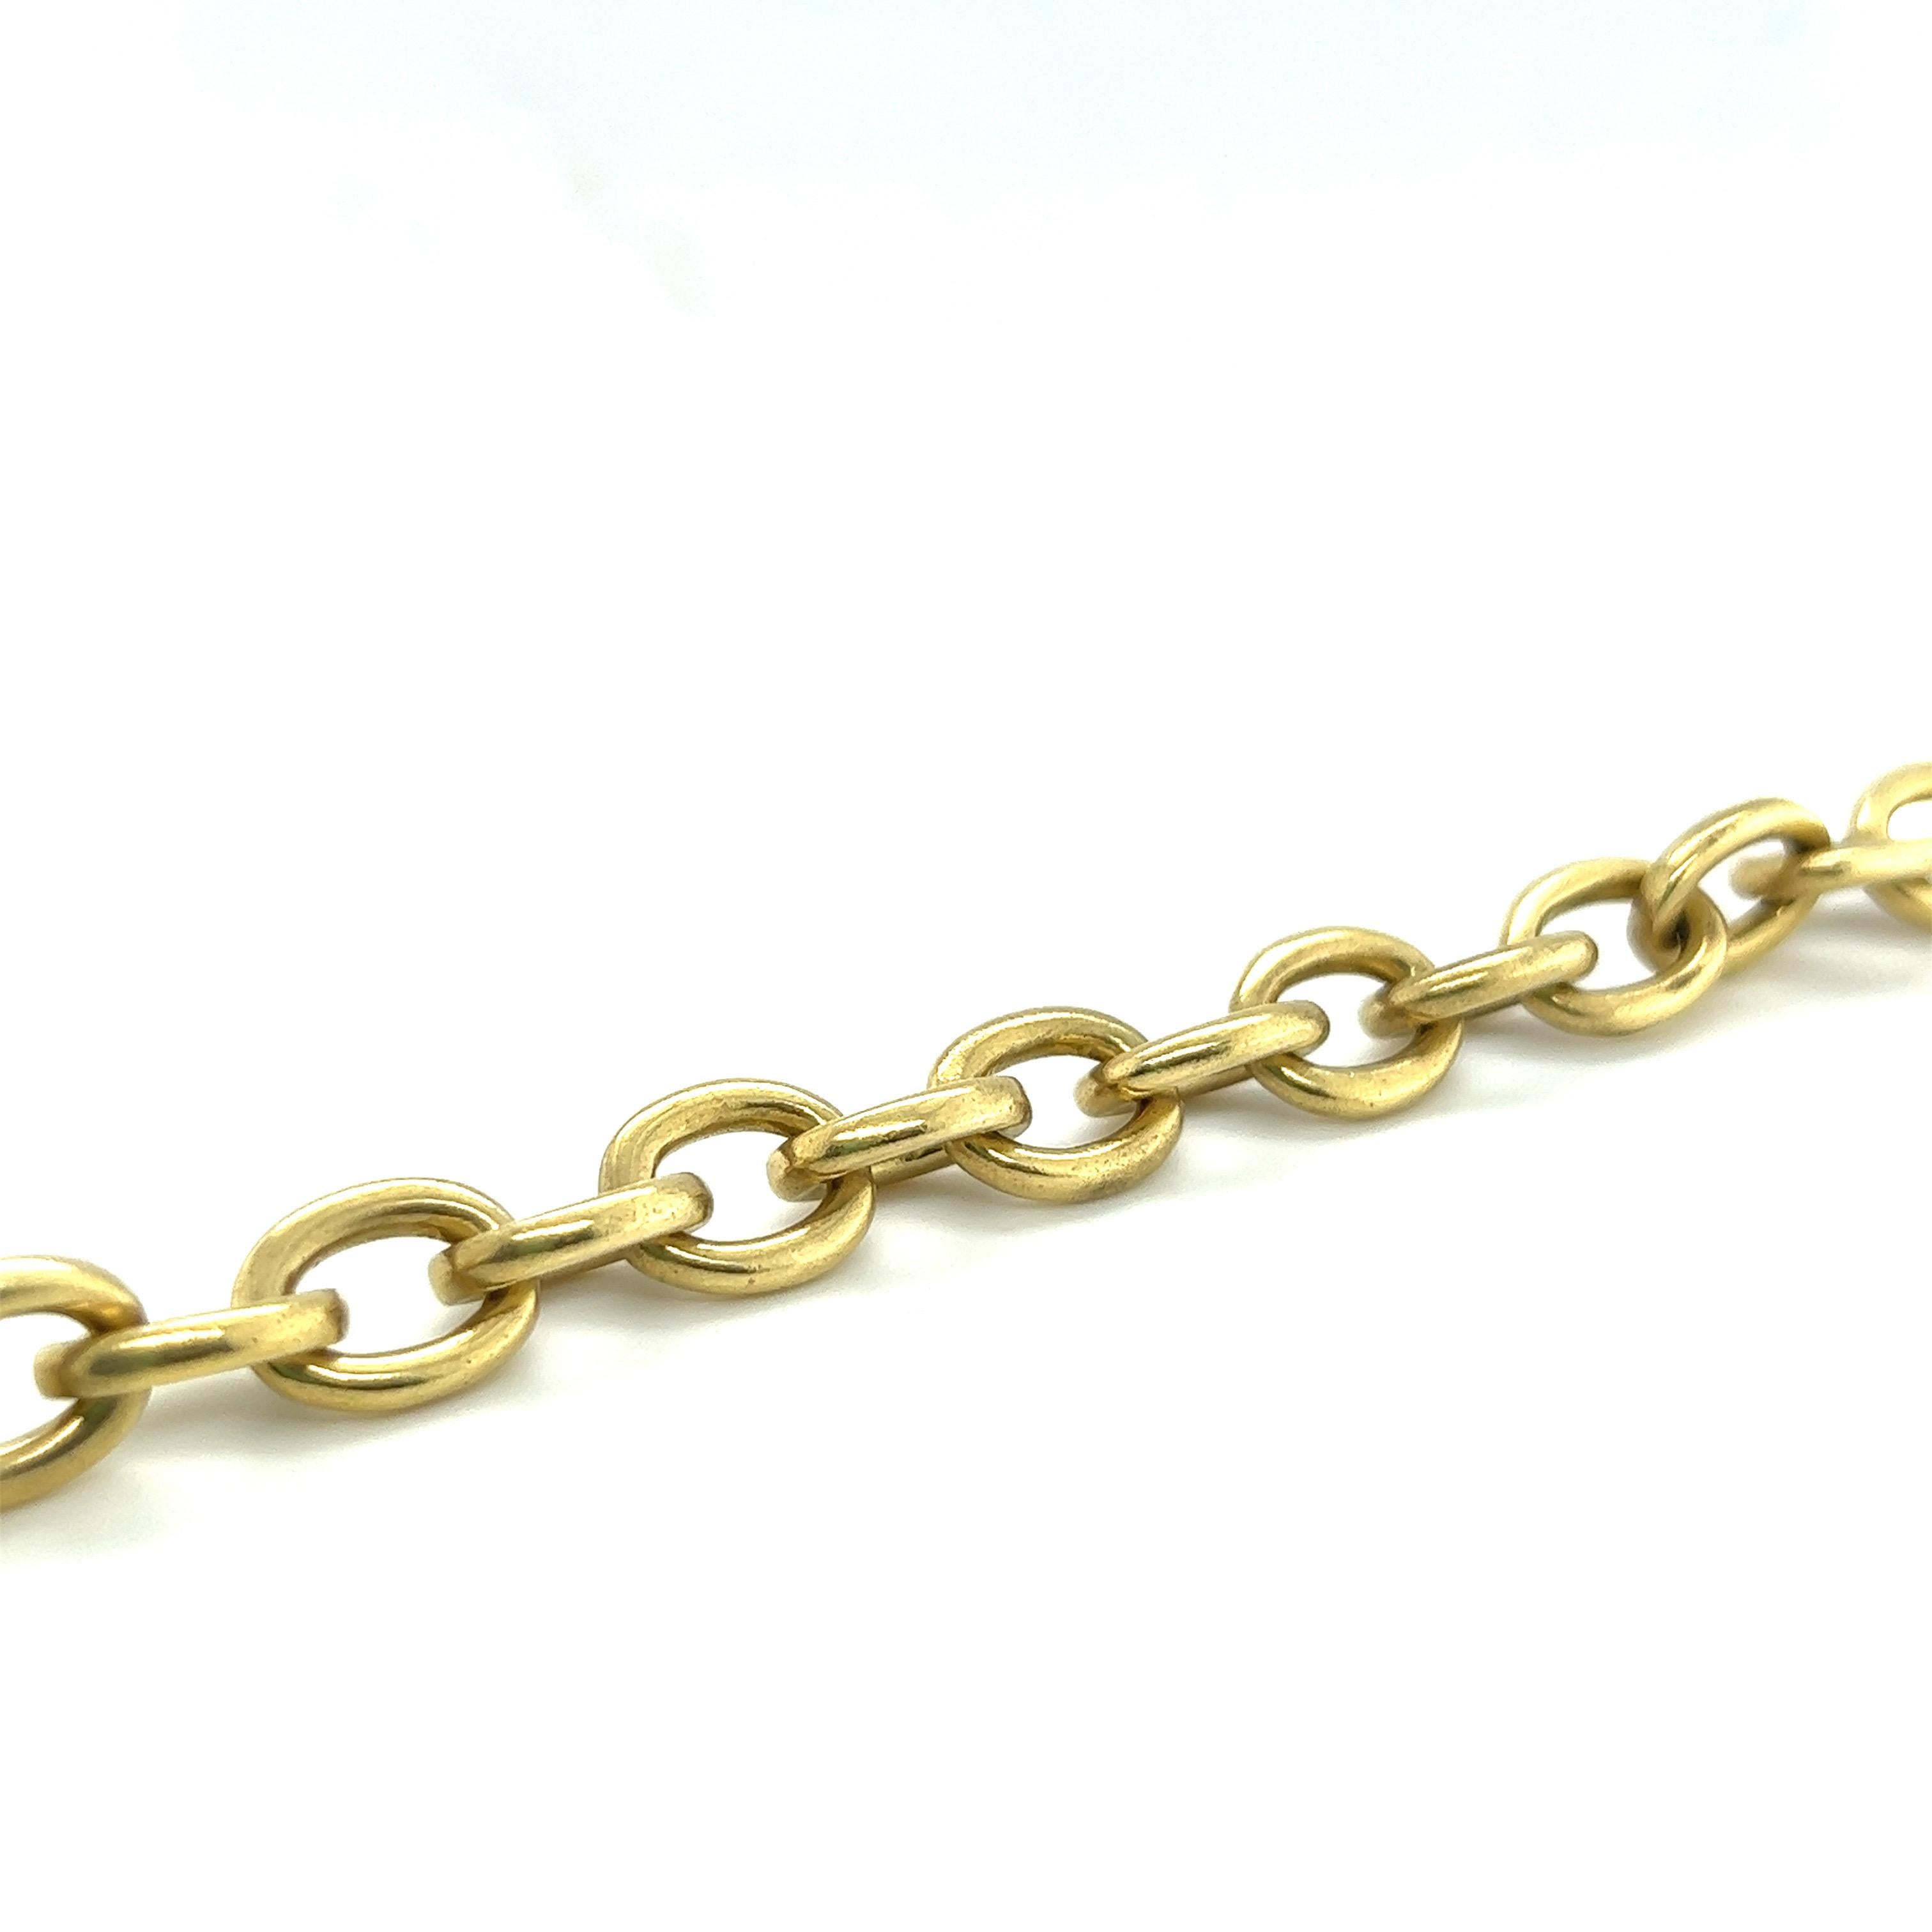 Magnifique bracelet en or jaune 18 carats de Vahe Naltchayan, 1987.

Bracelet en chaîne composée de maillons ovales en or jaune. Le bracelet est complété par un fermoir à bascule rehaussé de minuscules perles dorées. 

Vahe Naltchayan est une